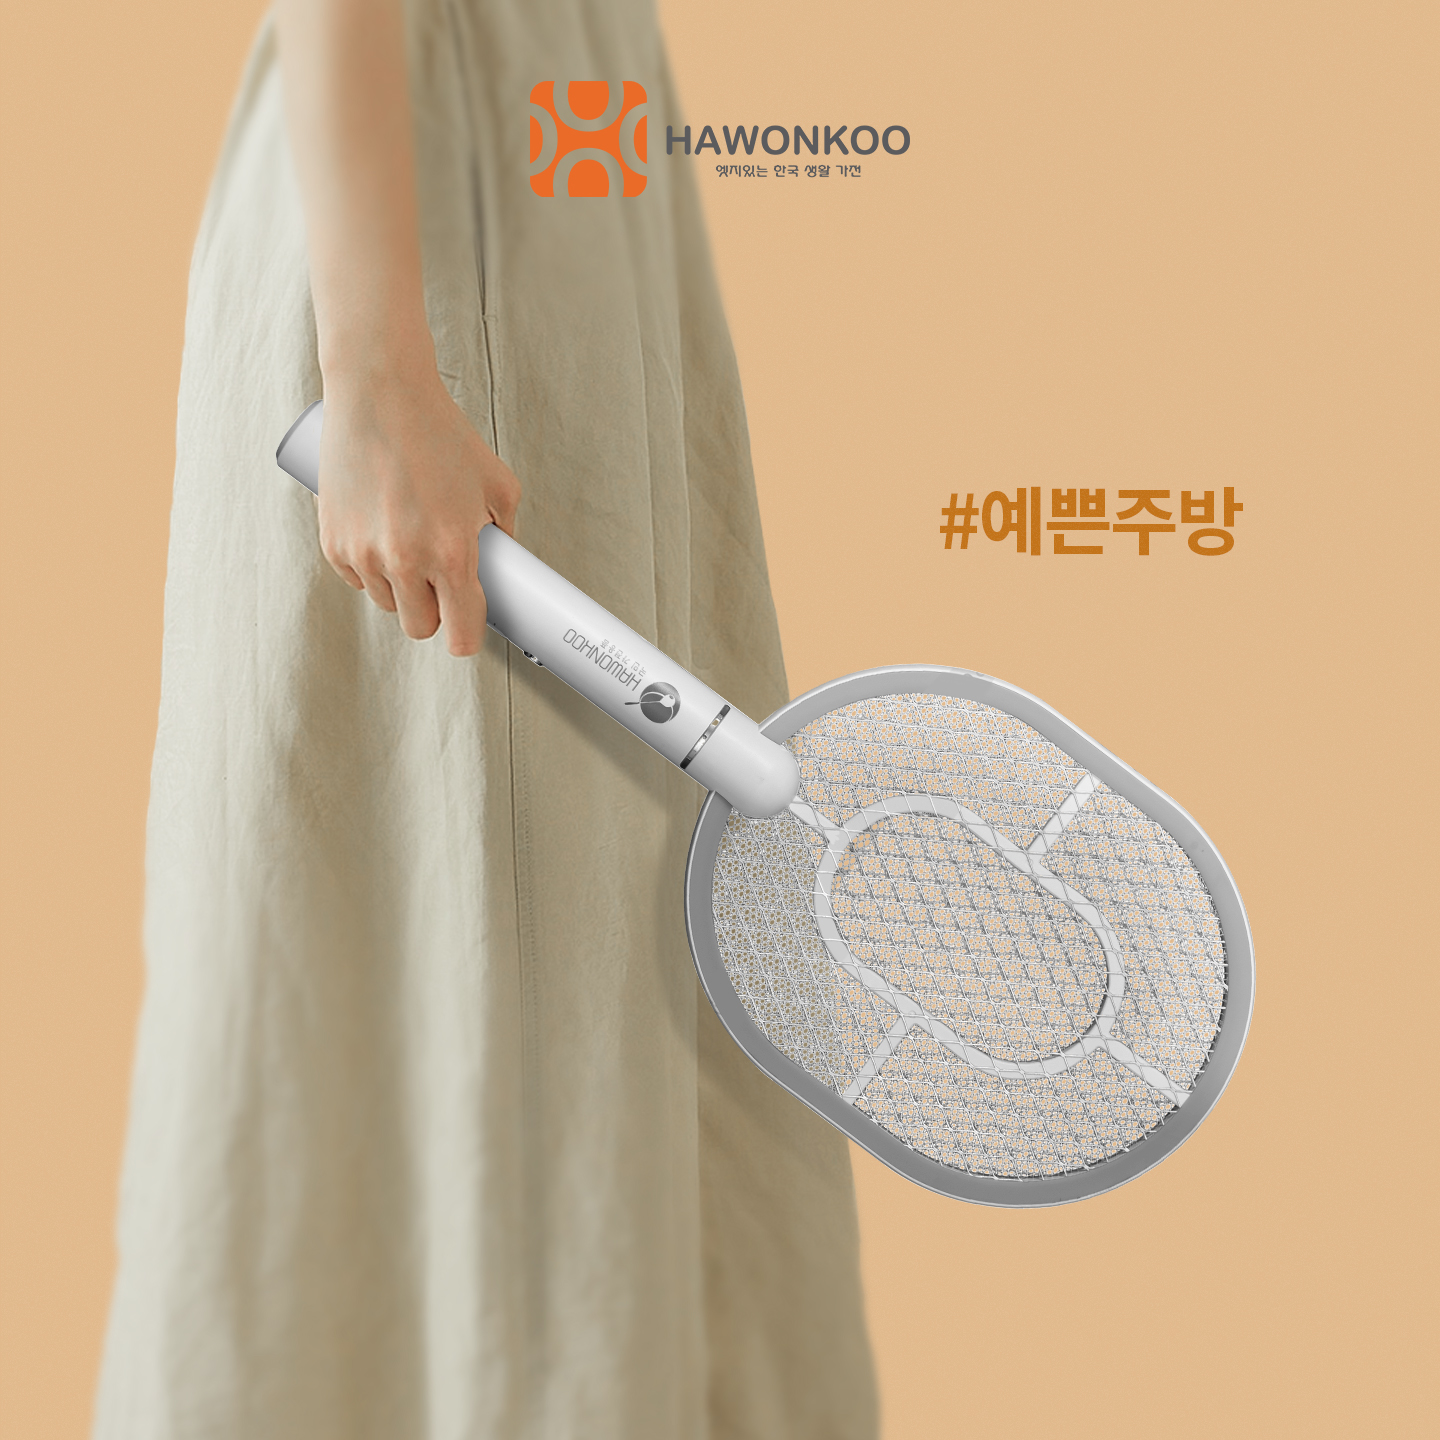 Vợt Muỗi HAWONKOO MSH-021 Cổng USB Pin 1200MAH Hàng Chính Hãng Bảo Hành 12 Tháng - Thương Hiệu Hàn Quốc